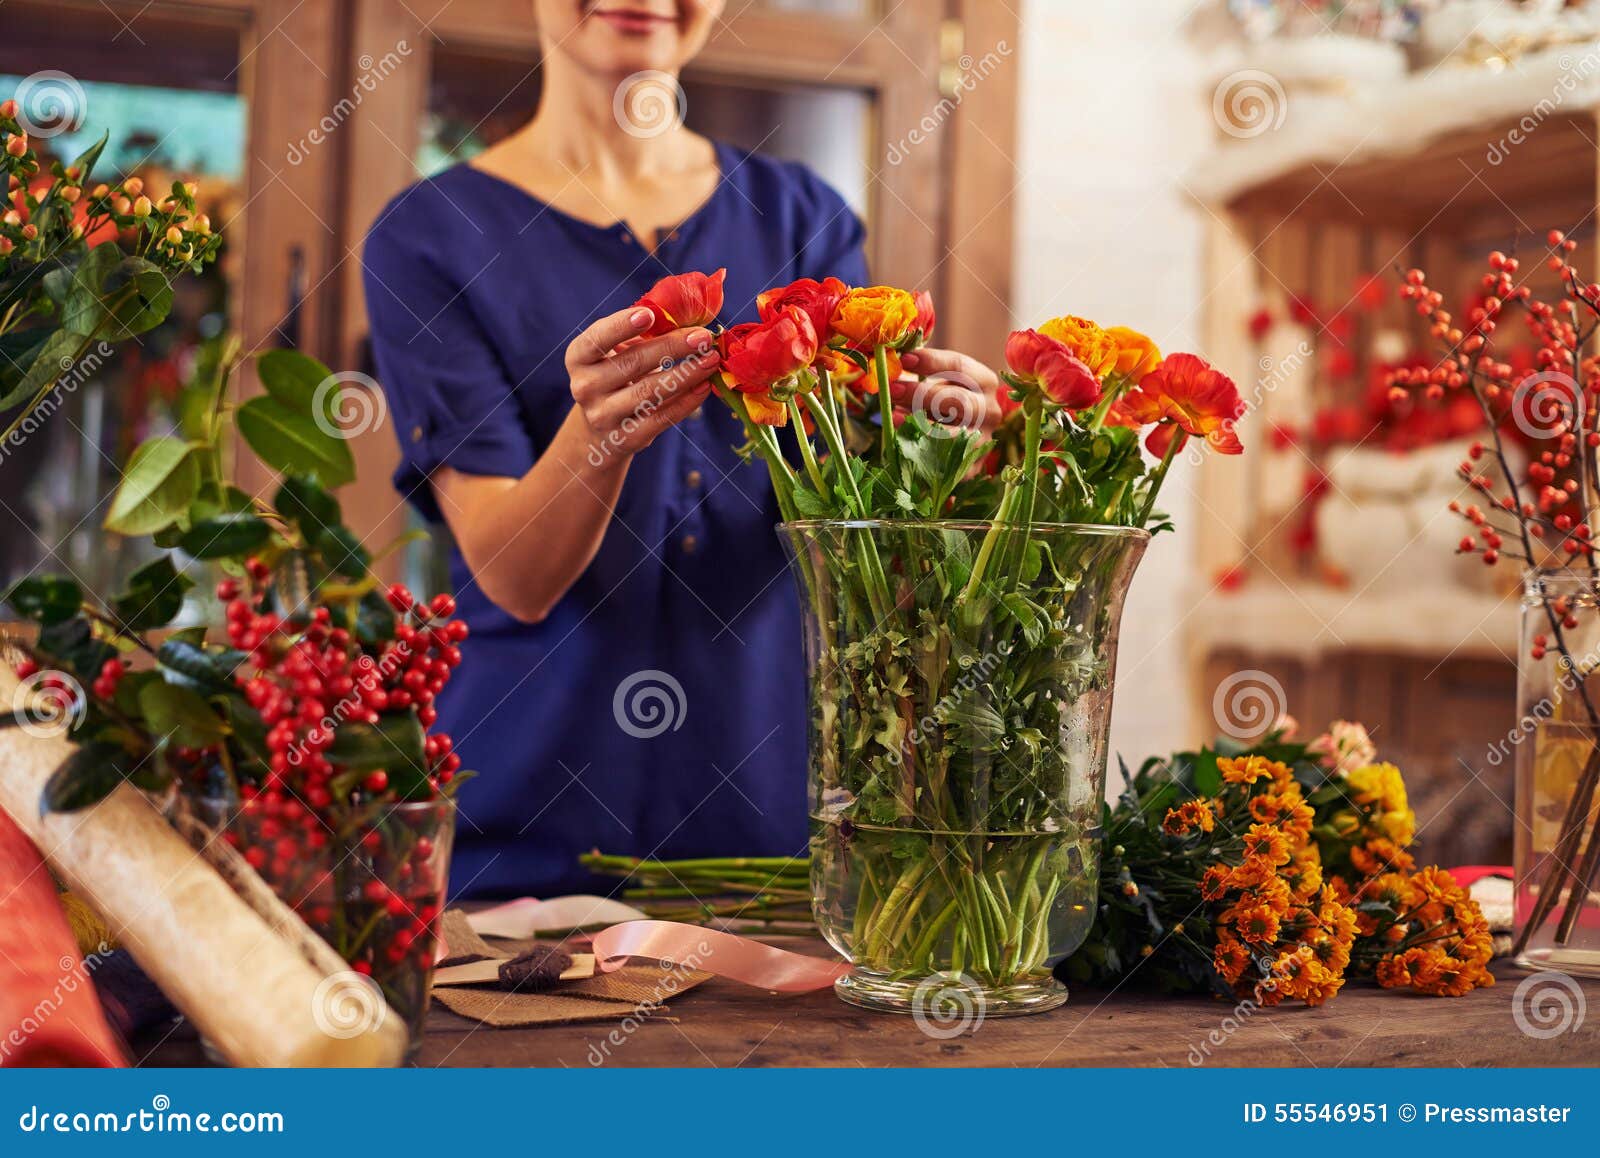 Продляем жизнь букету. Ваза "женщина". Продлить жизнь цветам в вазе. Как продлить жизнь букету. Цветы которыми дополняют букеты.